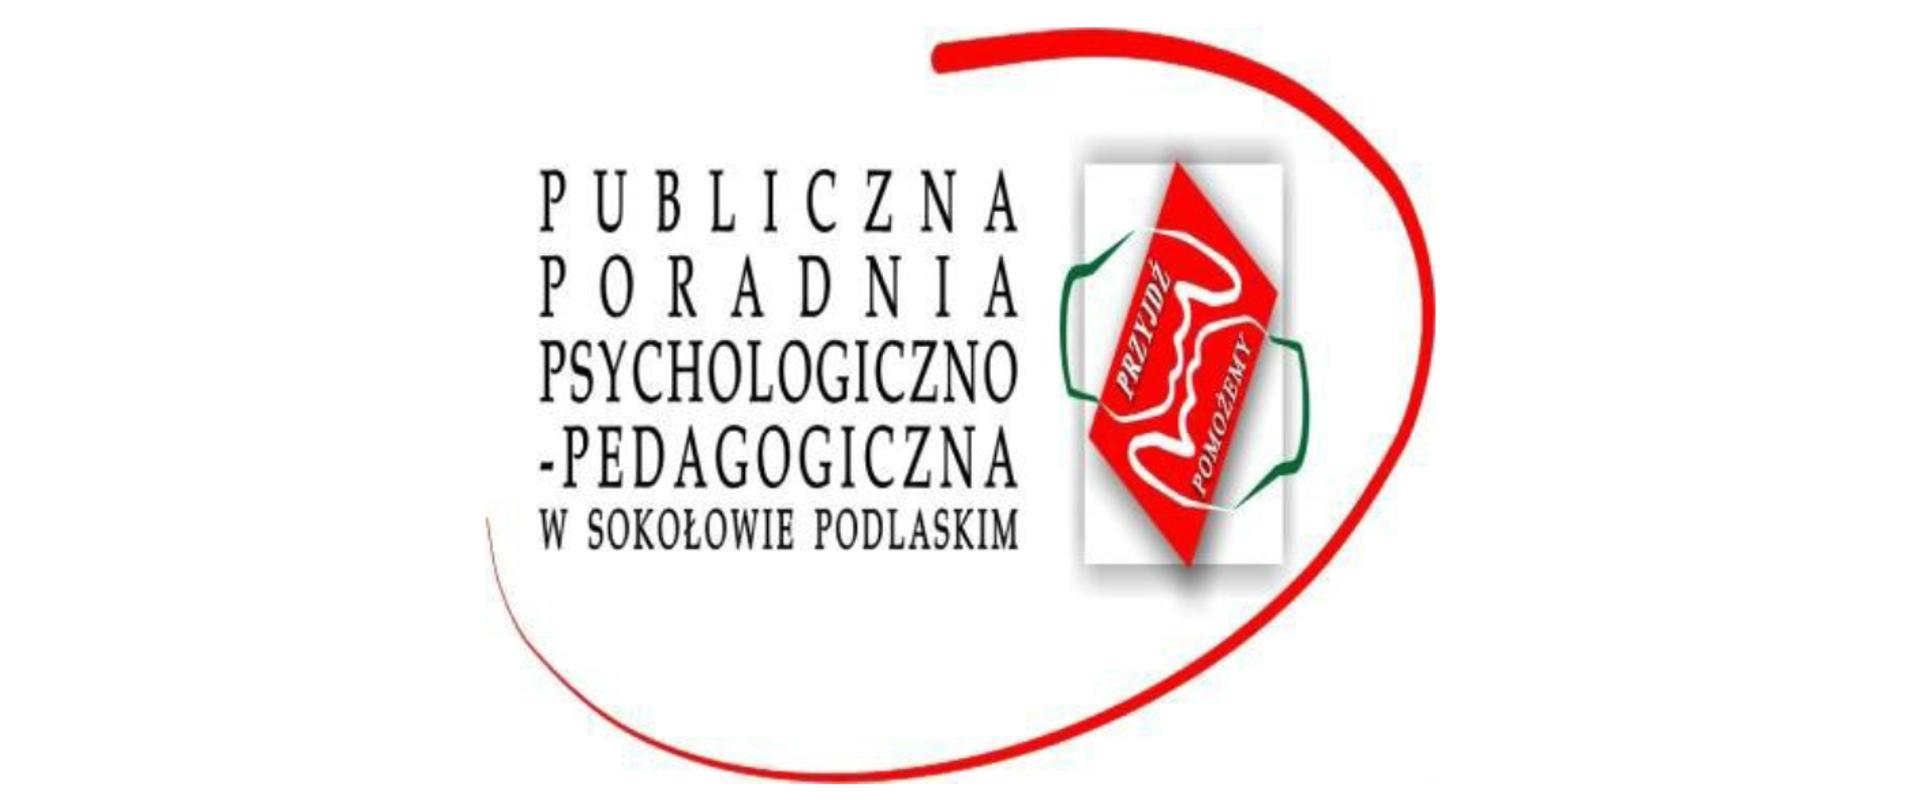 Publiczna Poradnia Psychologiczno - Pedagogiczna w Sokołowie Podlaskim - logo